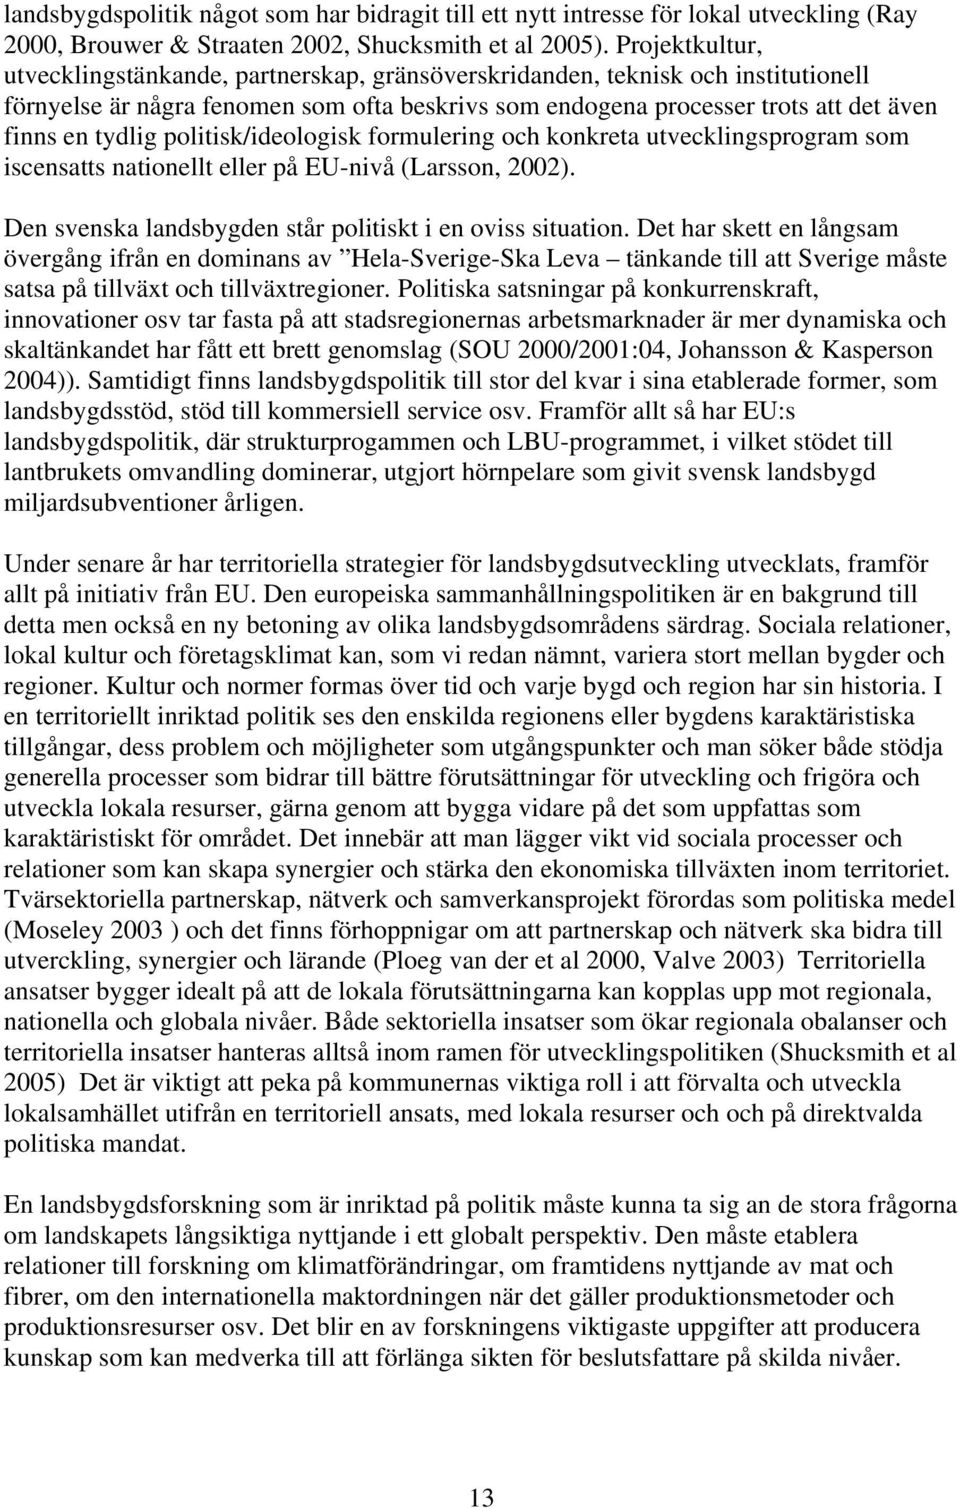 politisk/ideologisk formulering och konkreta utvecklingsprogram som iscensatts nationellt eller på EU-nivå (Larsson, 2002). Den svenska landsbygden står politiskt i en oviss situation.